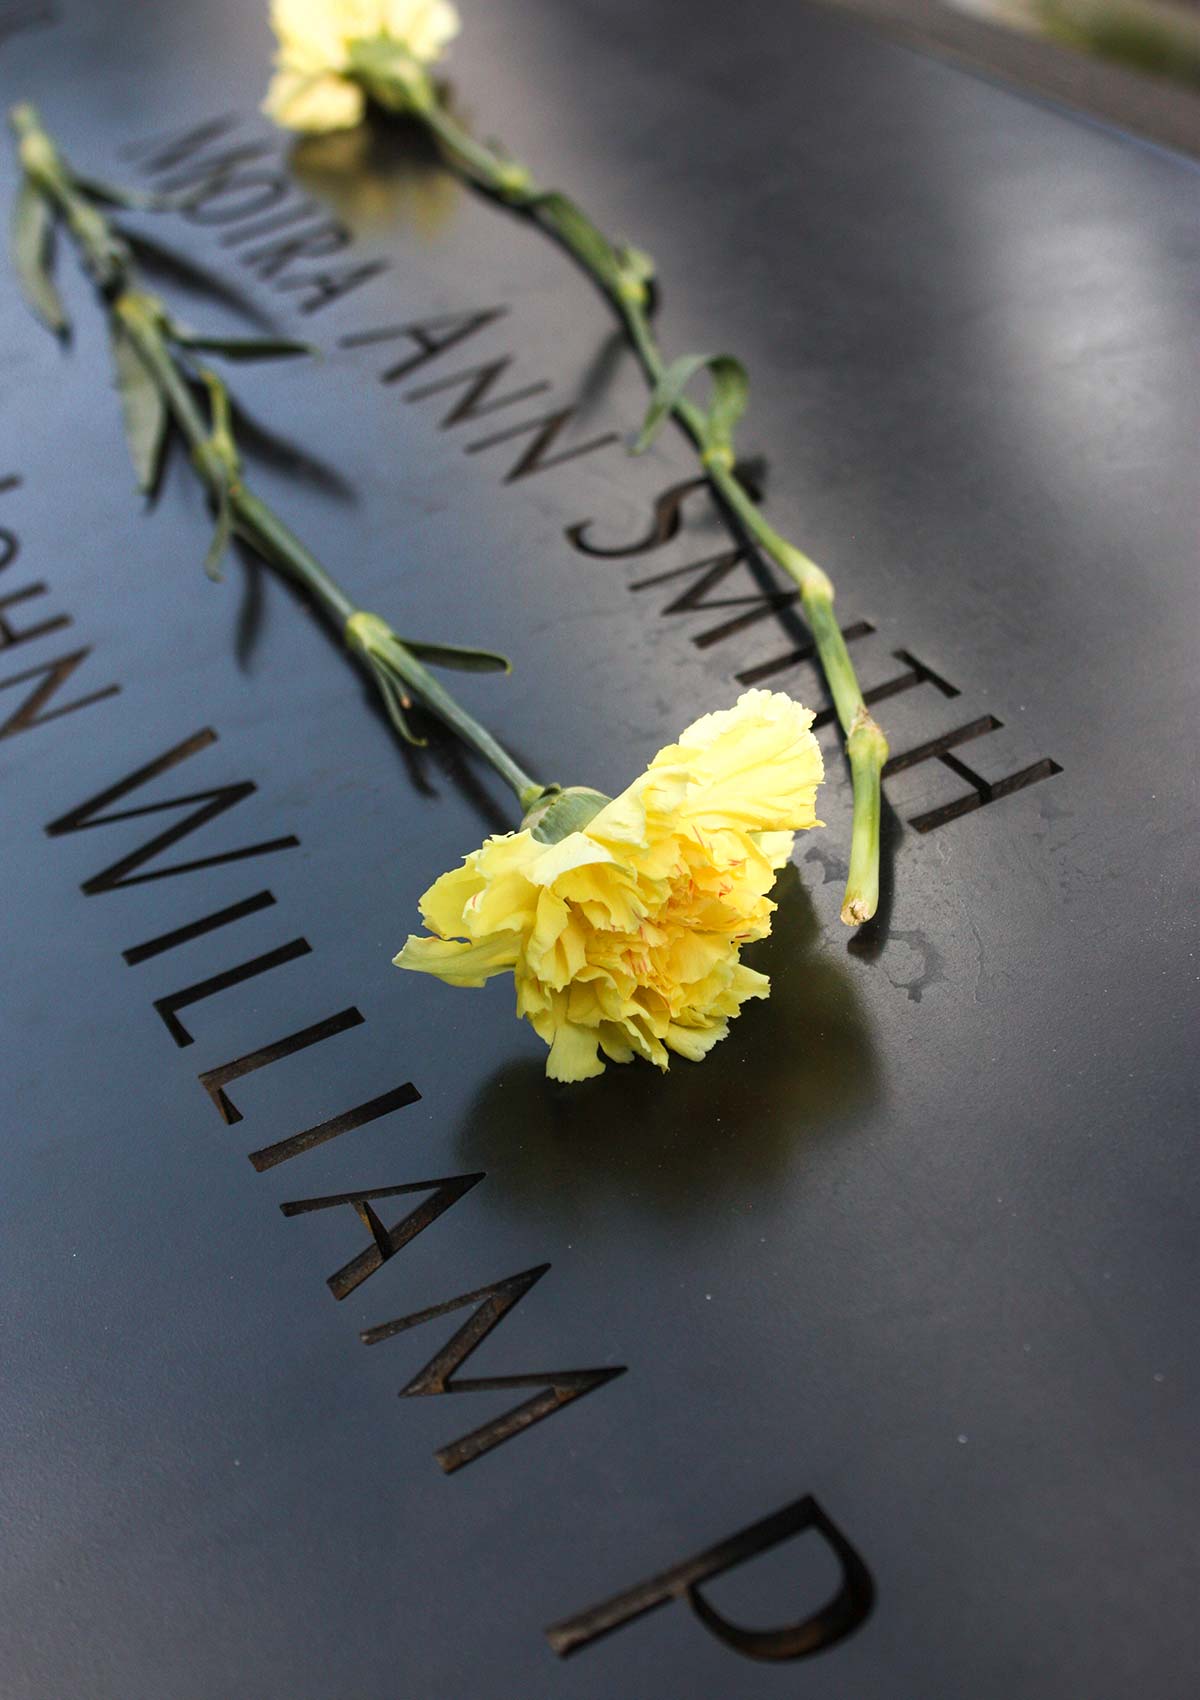 Fleurs, Mémorial du 11 septembre, New York, États-Unis / Flowers, 9/11 Memorial, NY, NYC, USA